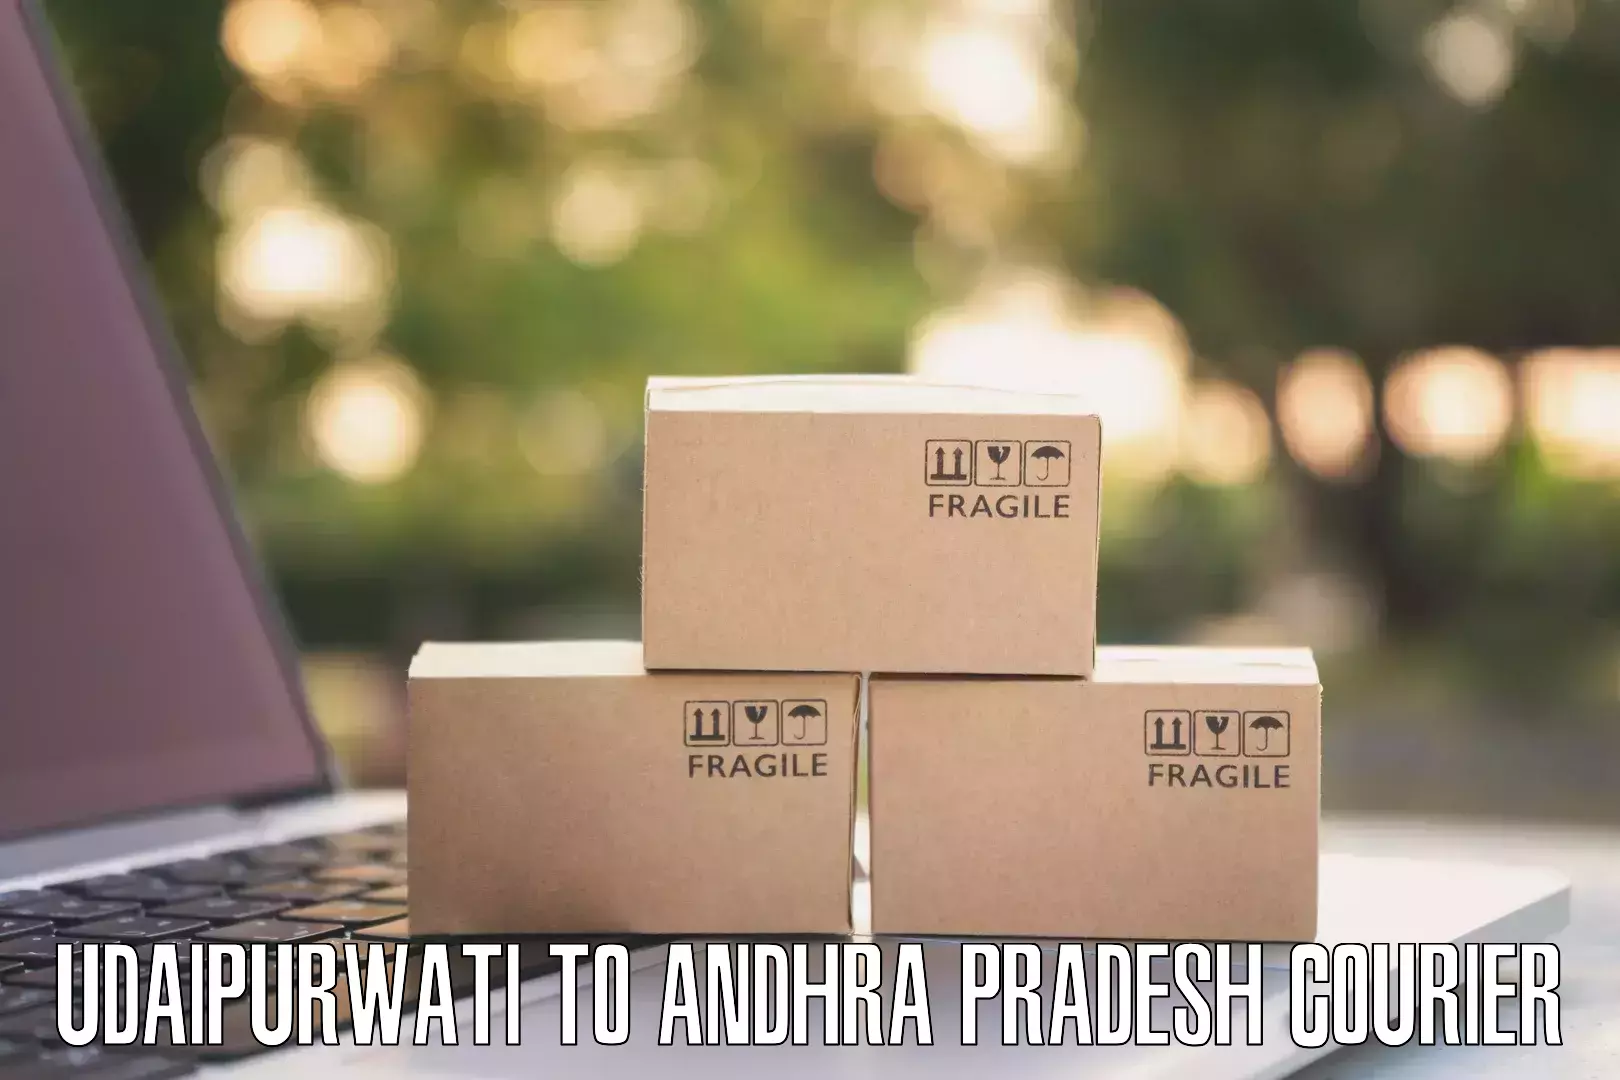 Efficient parcel delivery Udaipurwati to Andhra Pradesh